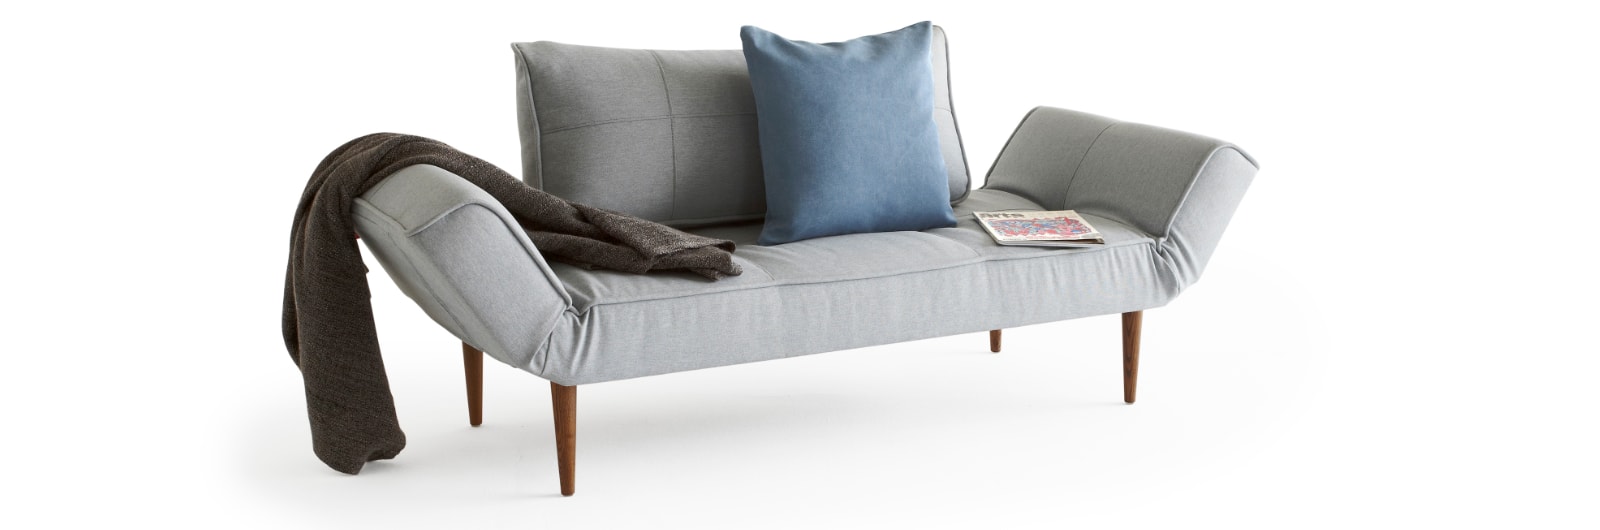 Innovation ZEAL kleines Sofa mit klappbaren Armlehnen, Liege mit hellen Holzbeinen - 70x200